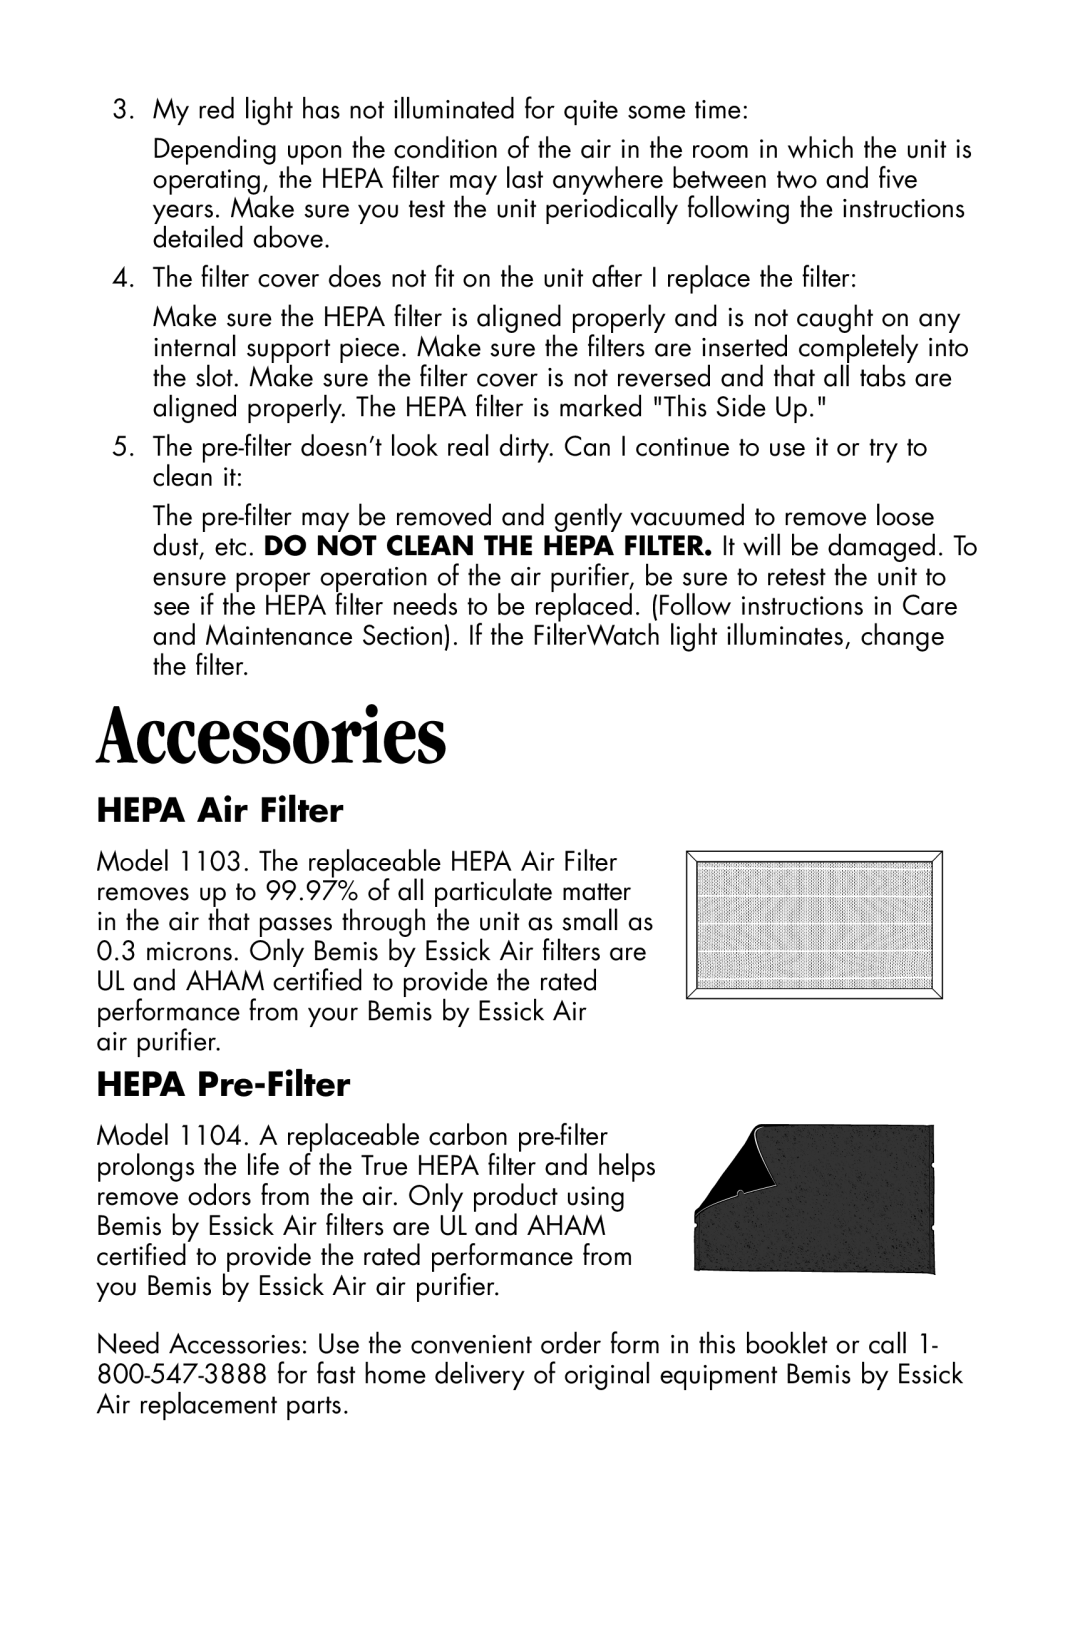 Essick Air 127-001 manual Accessories, HEPA Air Filter, HEPA Pre-Filter 